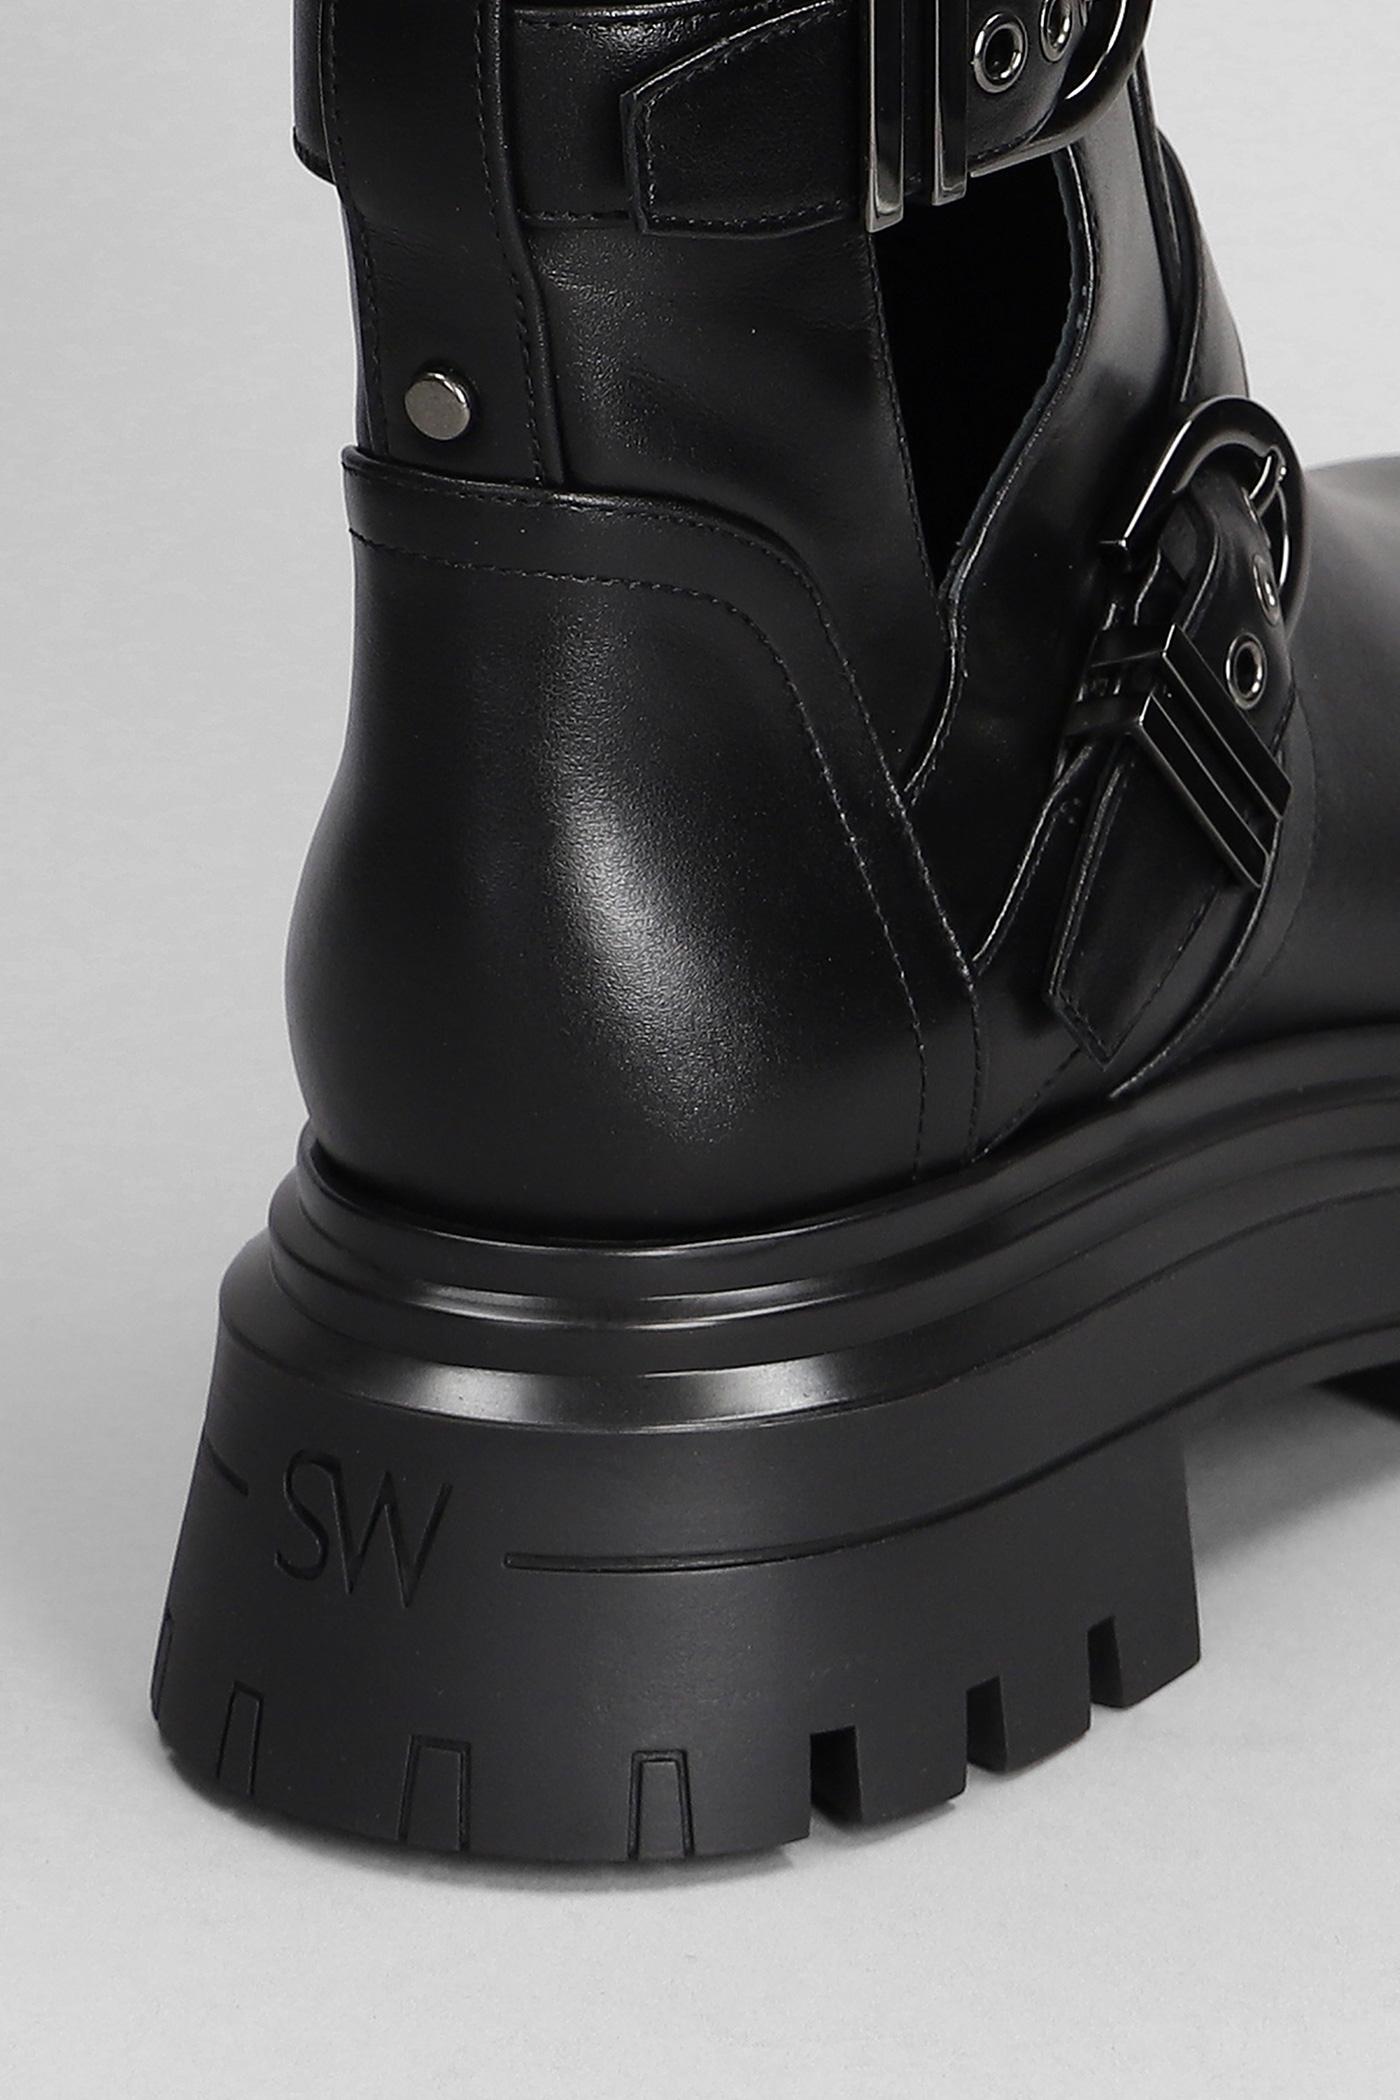 Stuart Weitzman Maverick Bedfrdmotob Combat Boots In Black Leather | Lyst